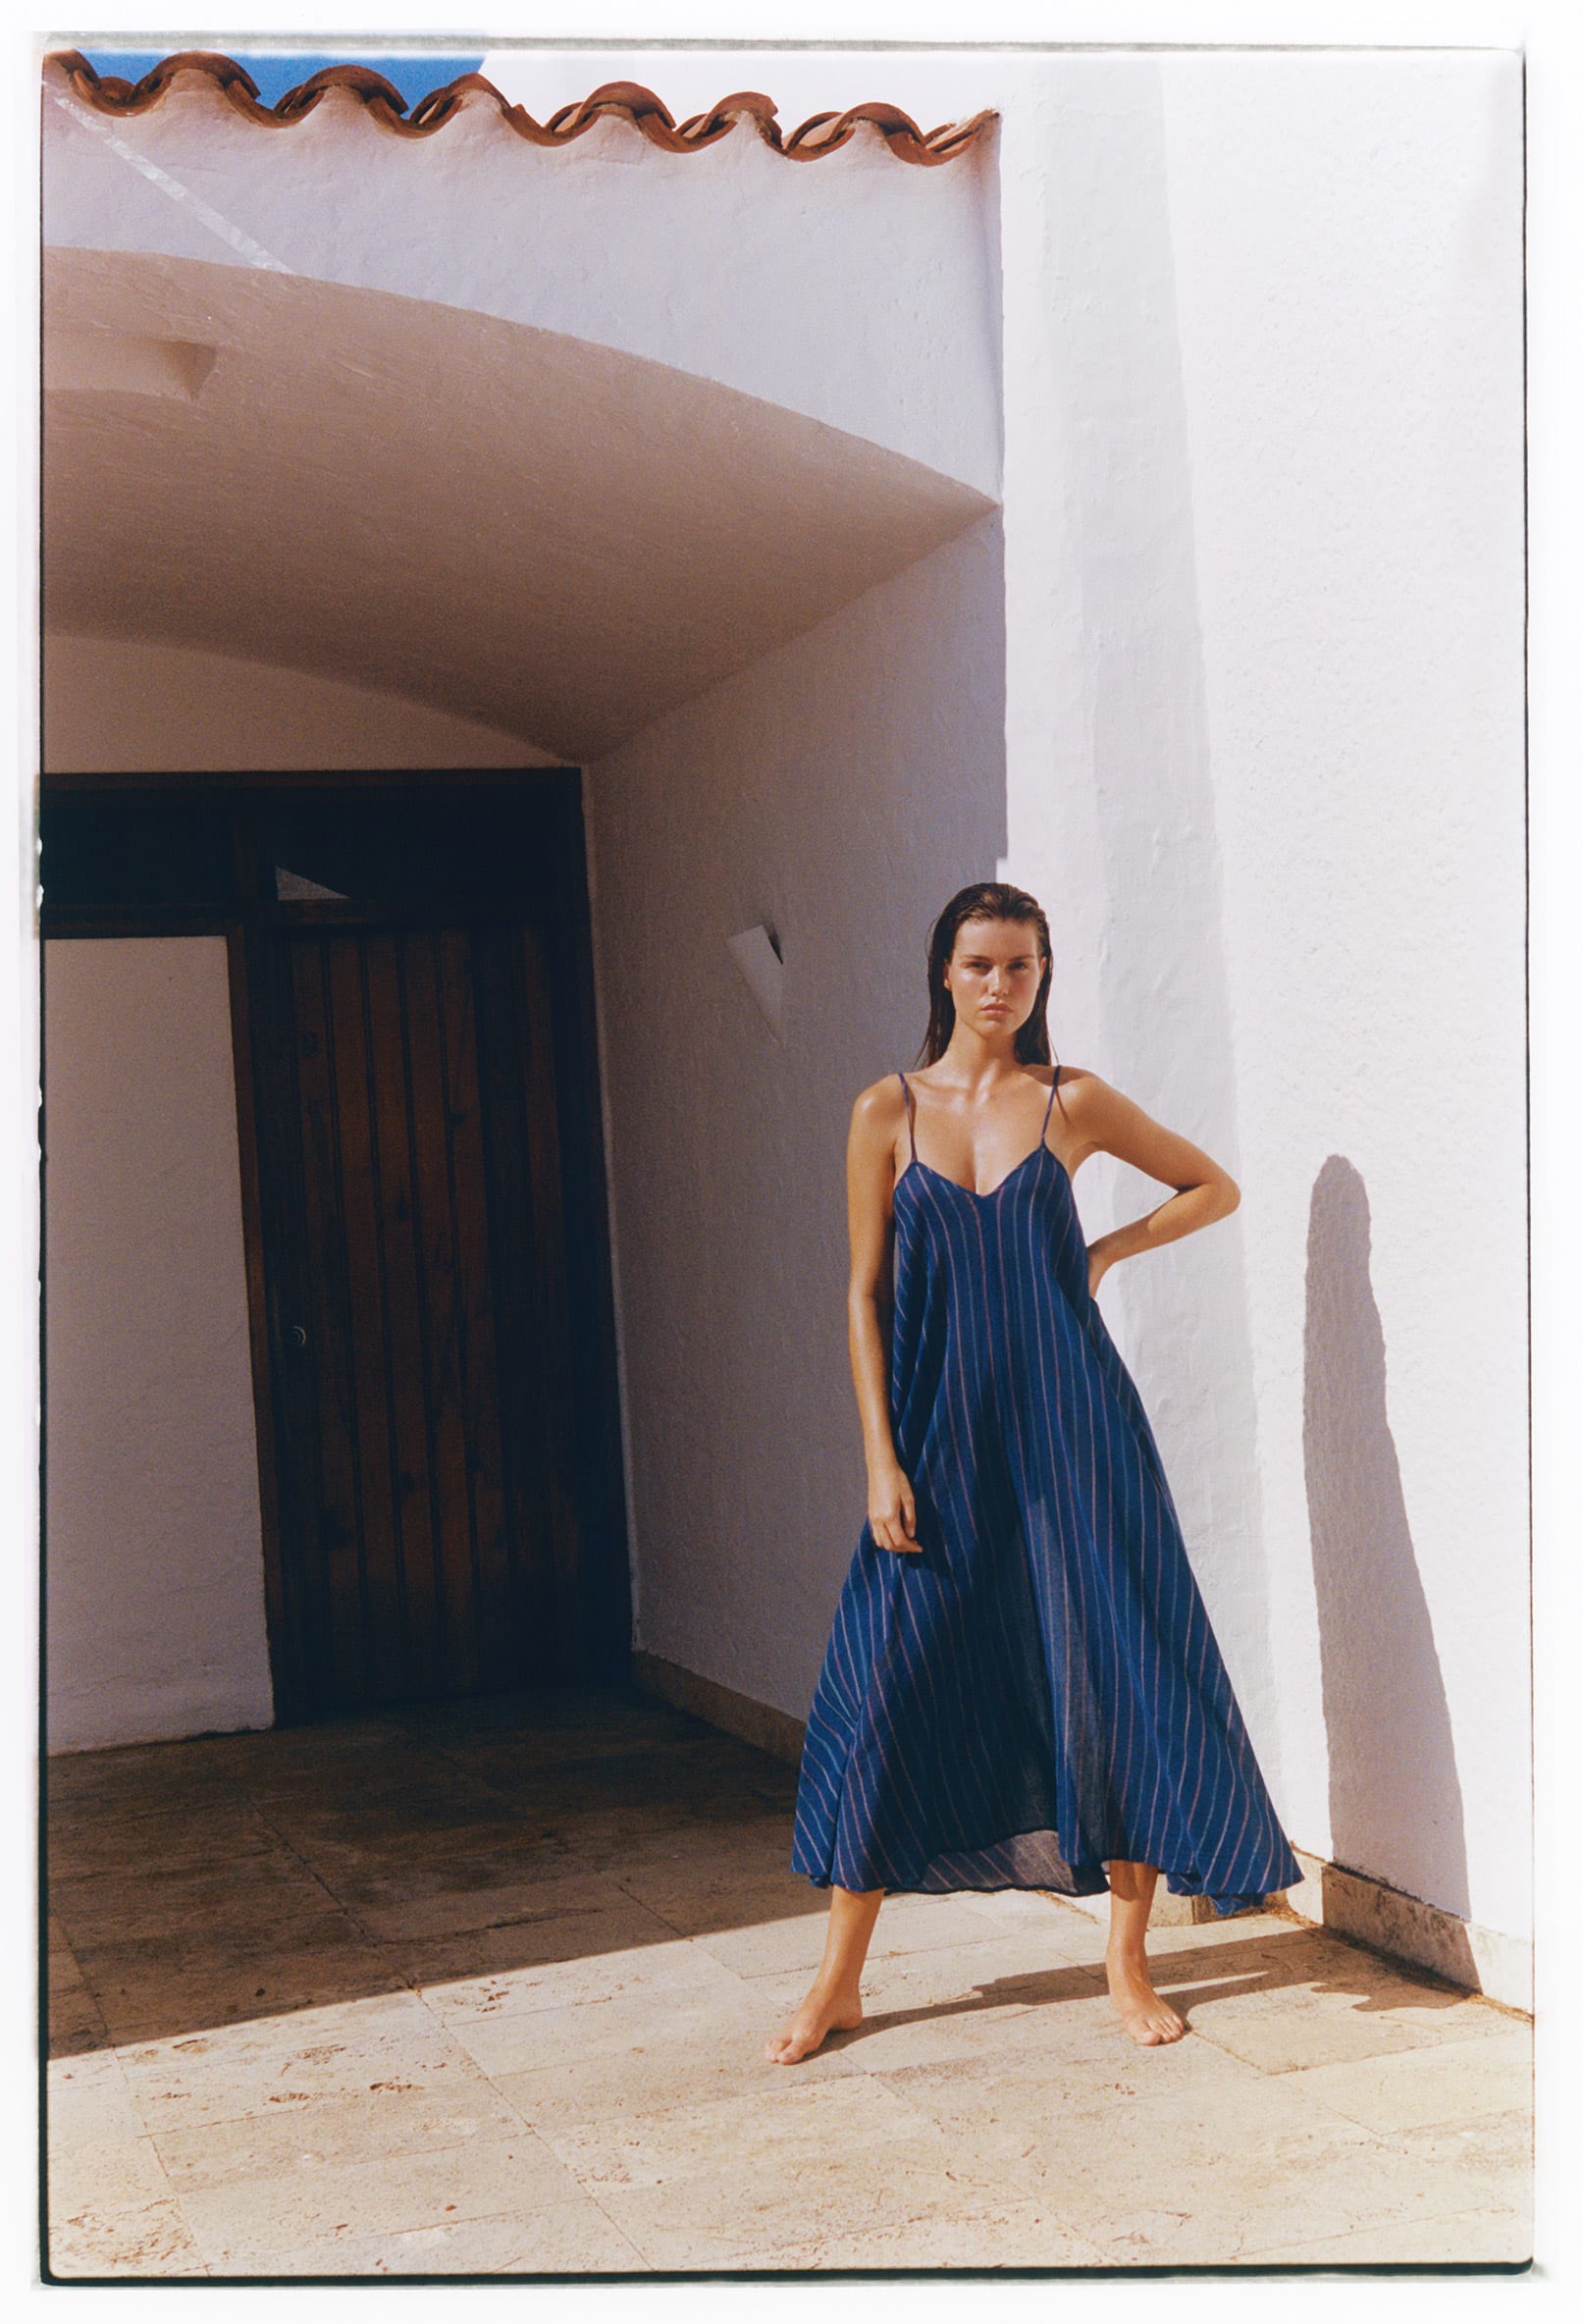 Mediterranean Summer: Αυτή είναι η νέα beachwear collection της Oysho για αξεπέραστο στυλ στην παραλία 